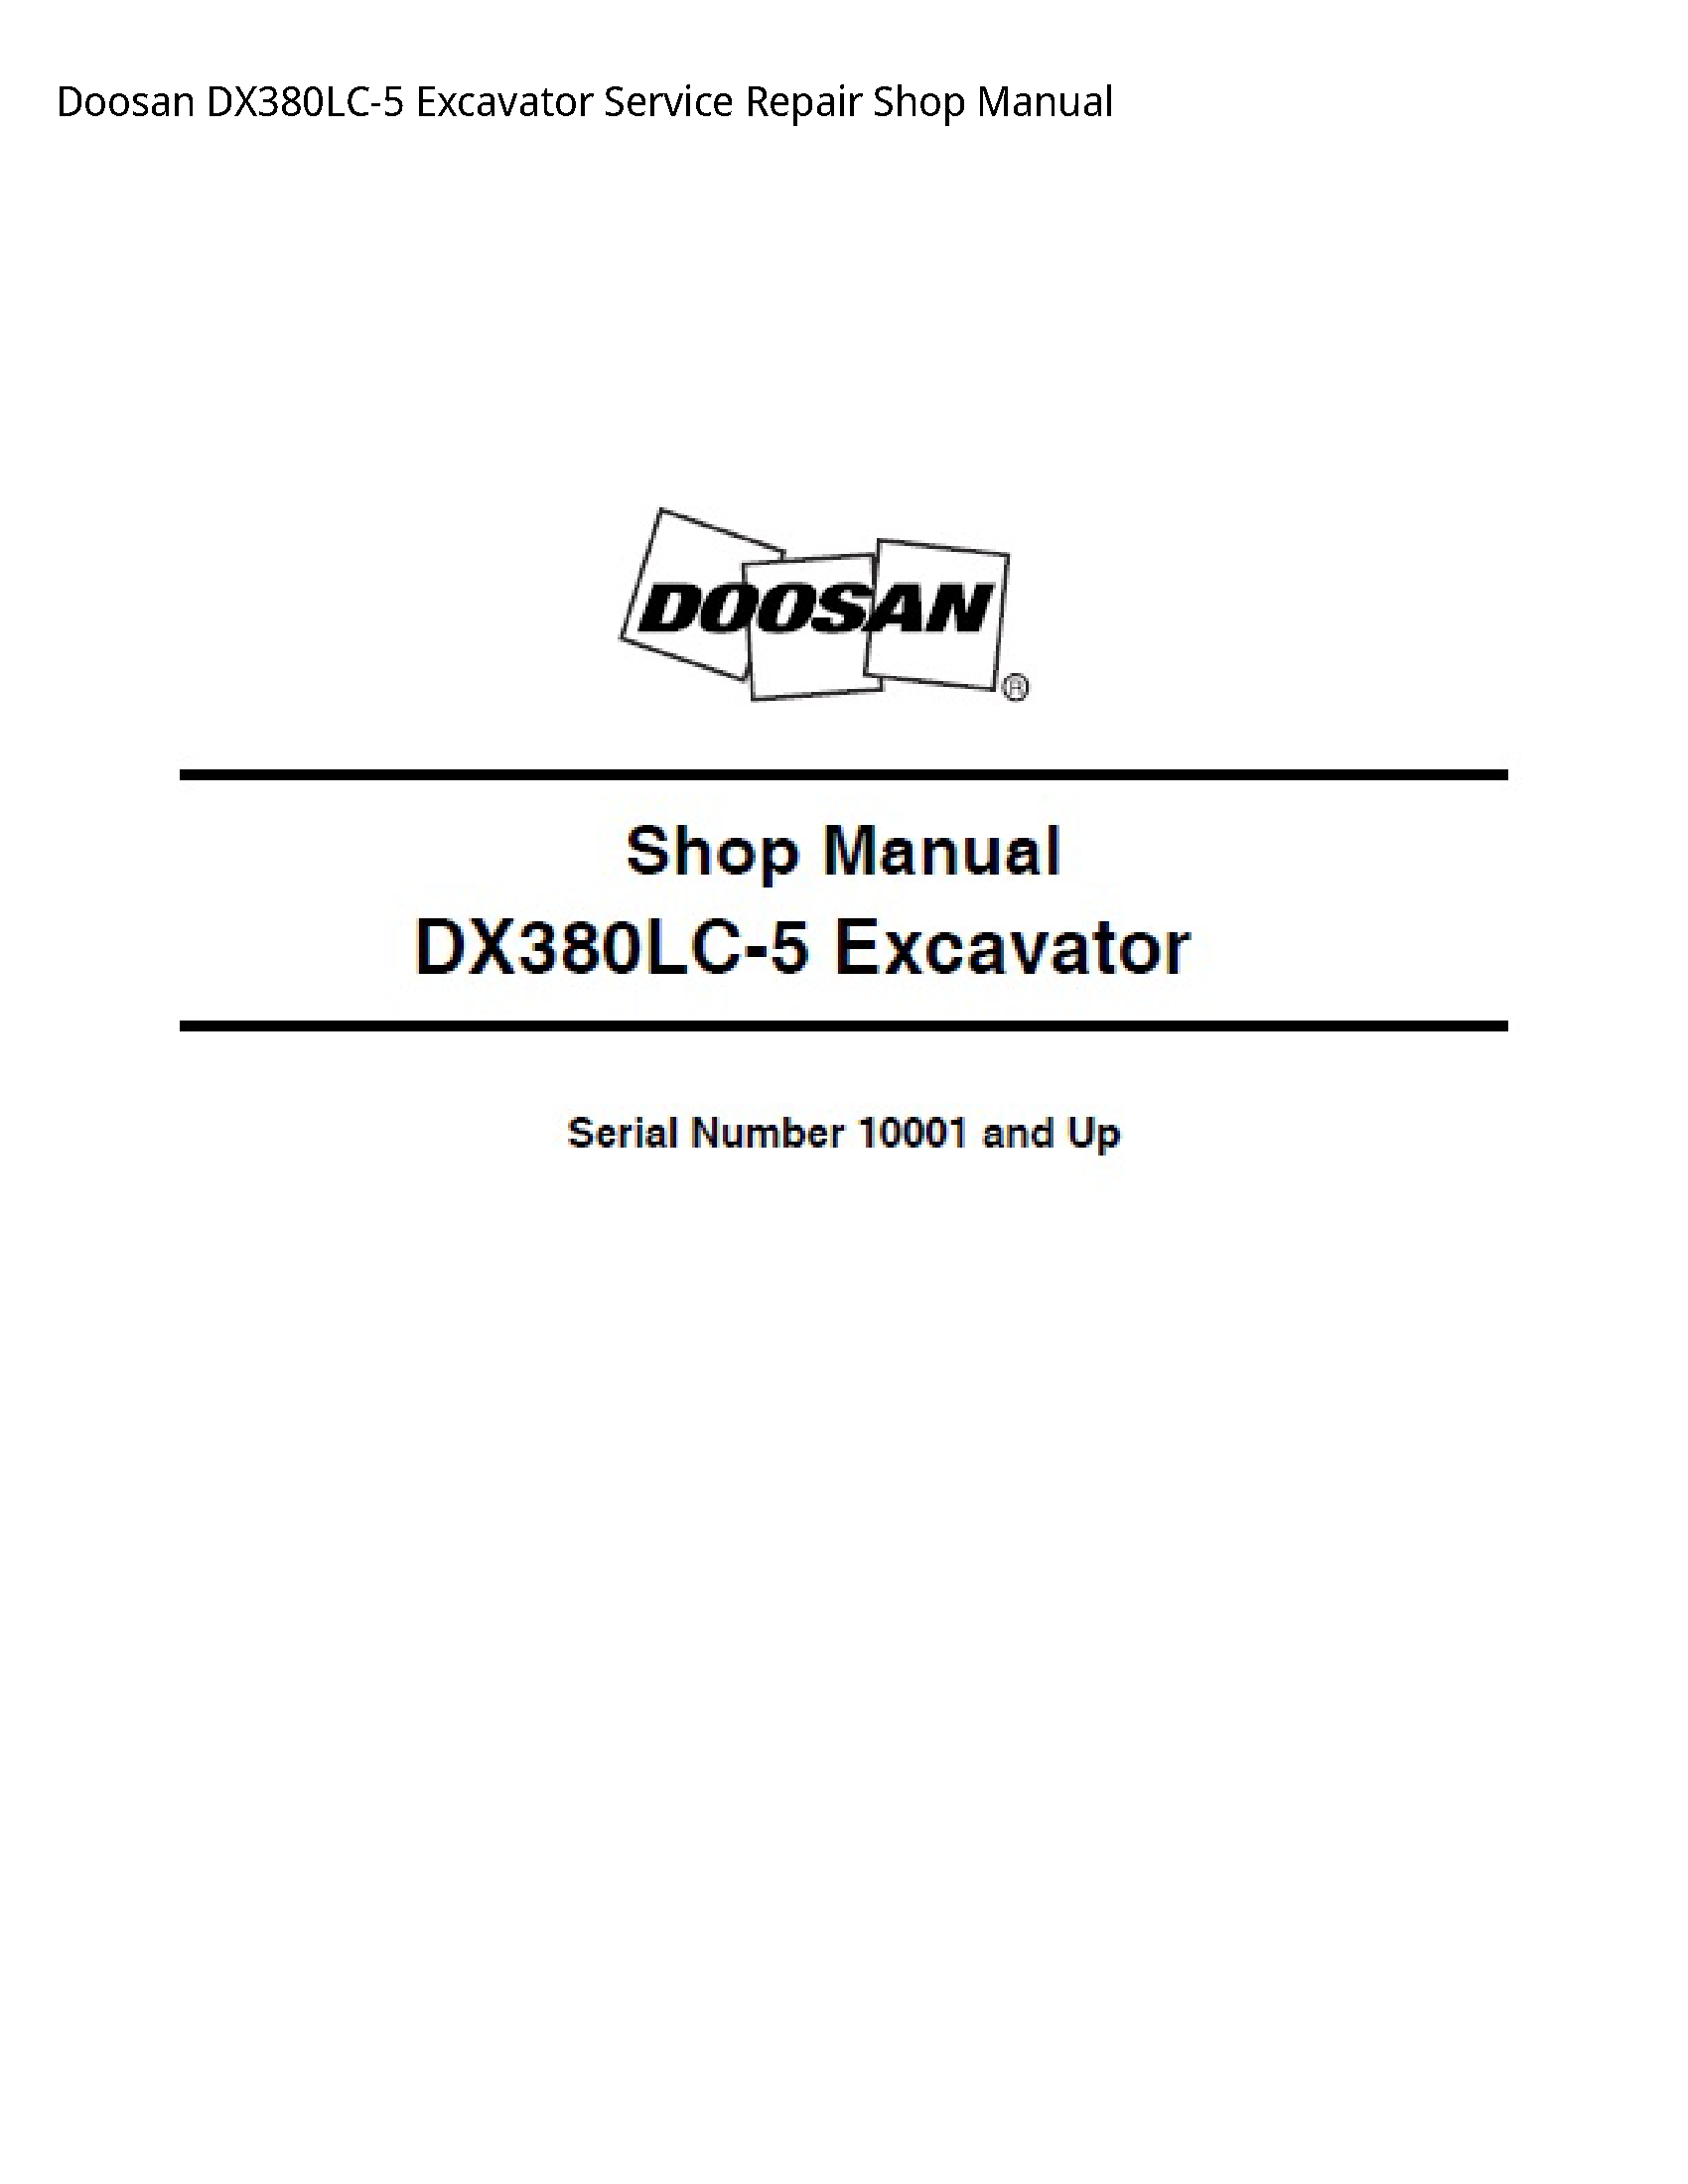 Doosan DX380LC-5 Excavator manual